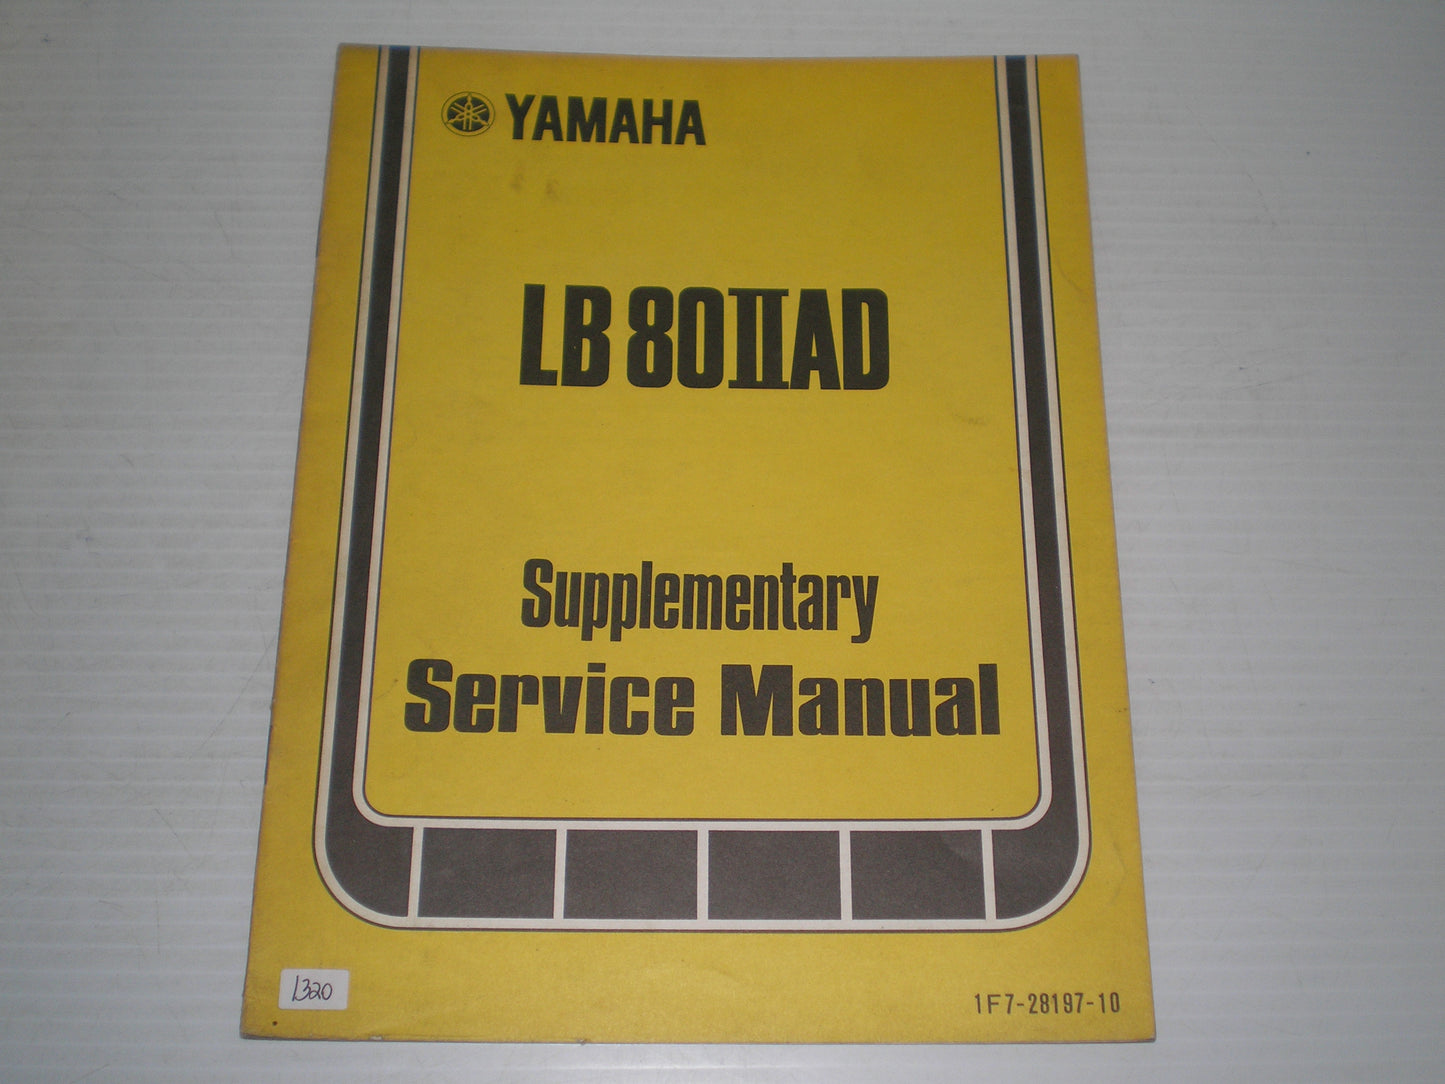 YAMAHA LB80 -IIAD  LB80IIAD  LB80 -2AD  1977  Service Supplement Manual  1F7-28197-10  LIT-11616-00-14  #1320